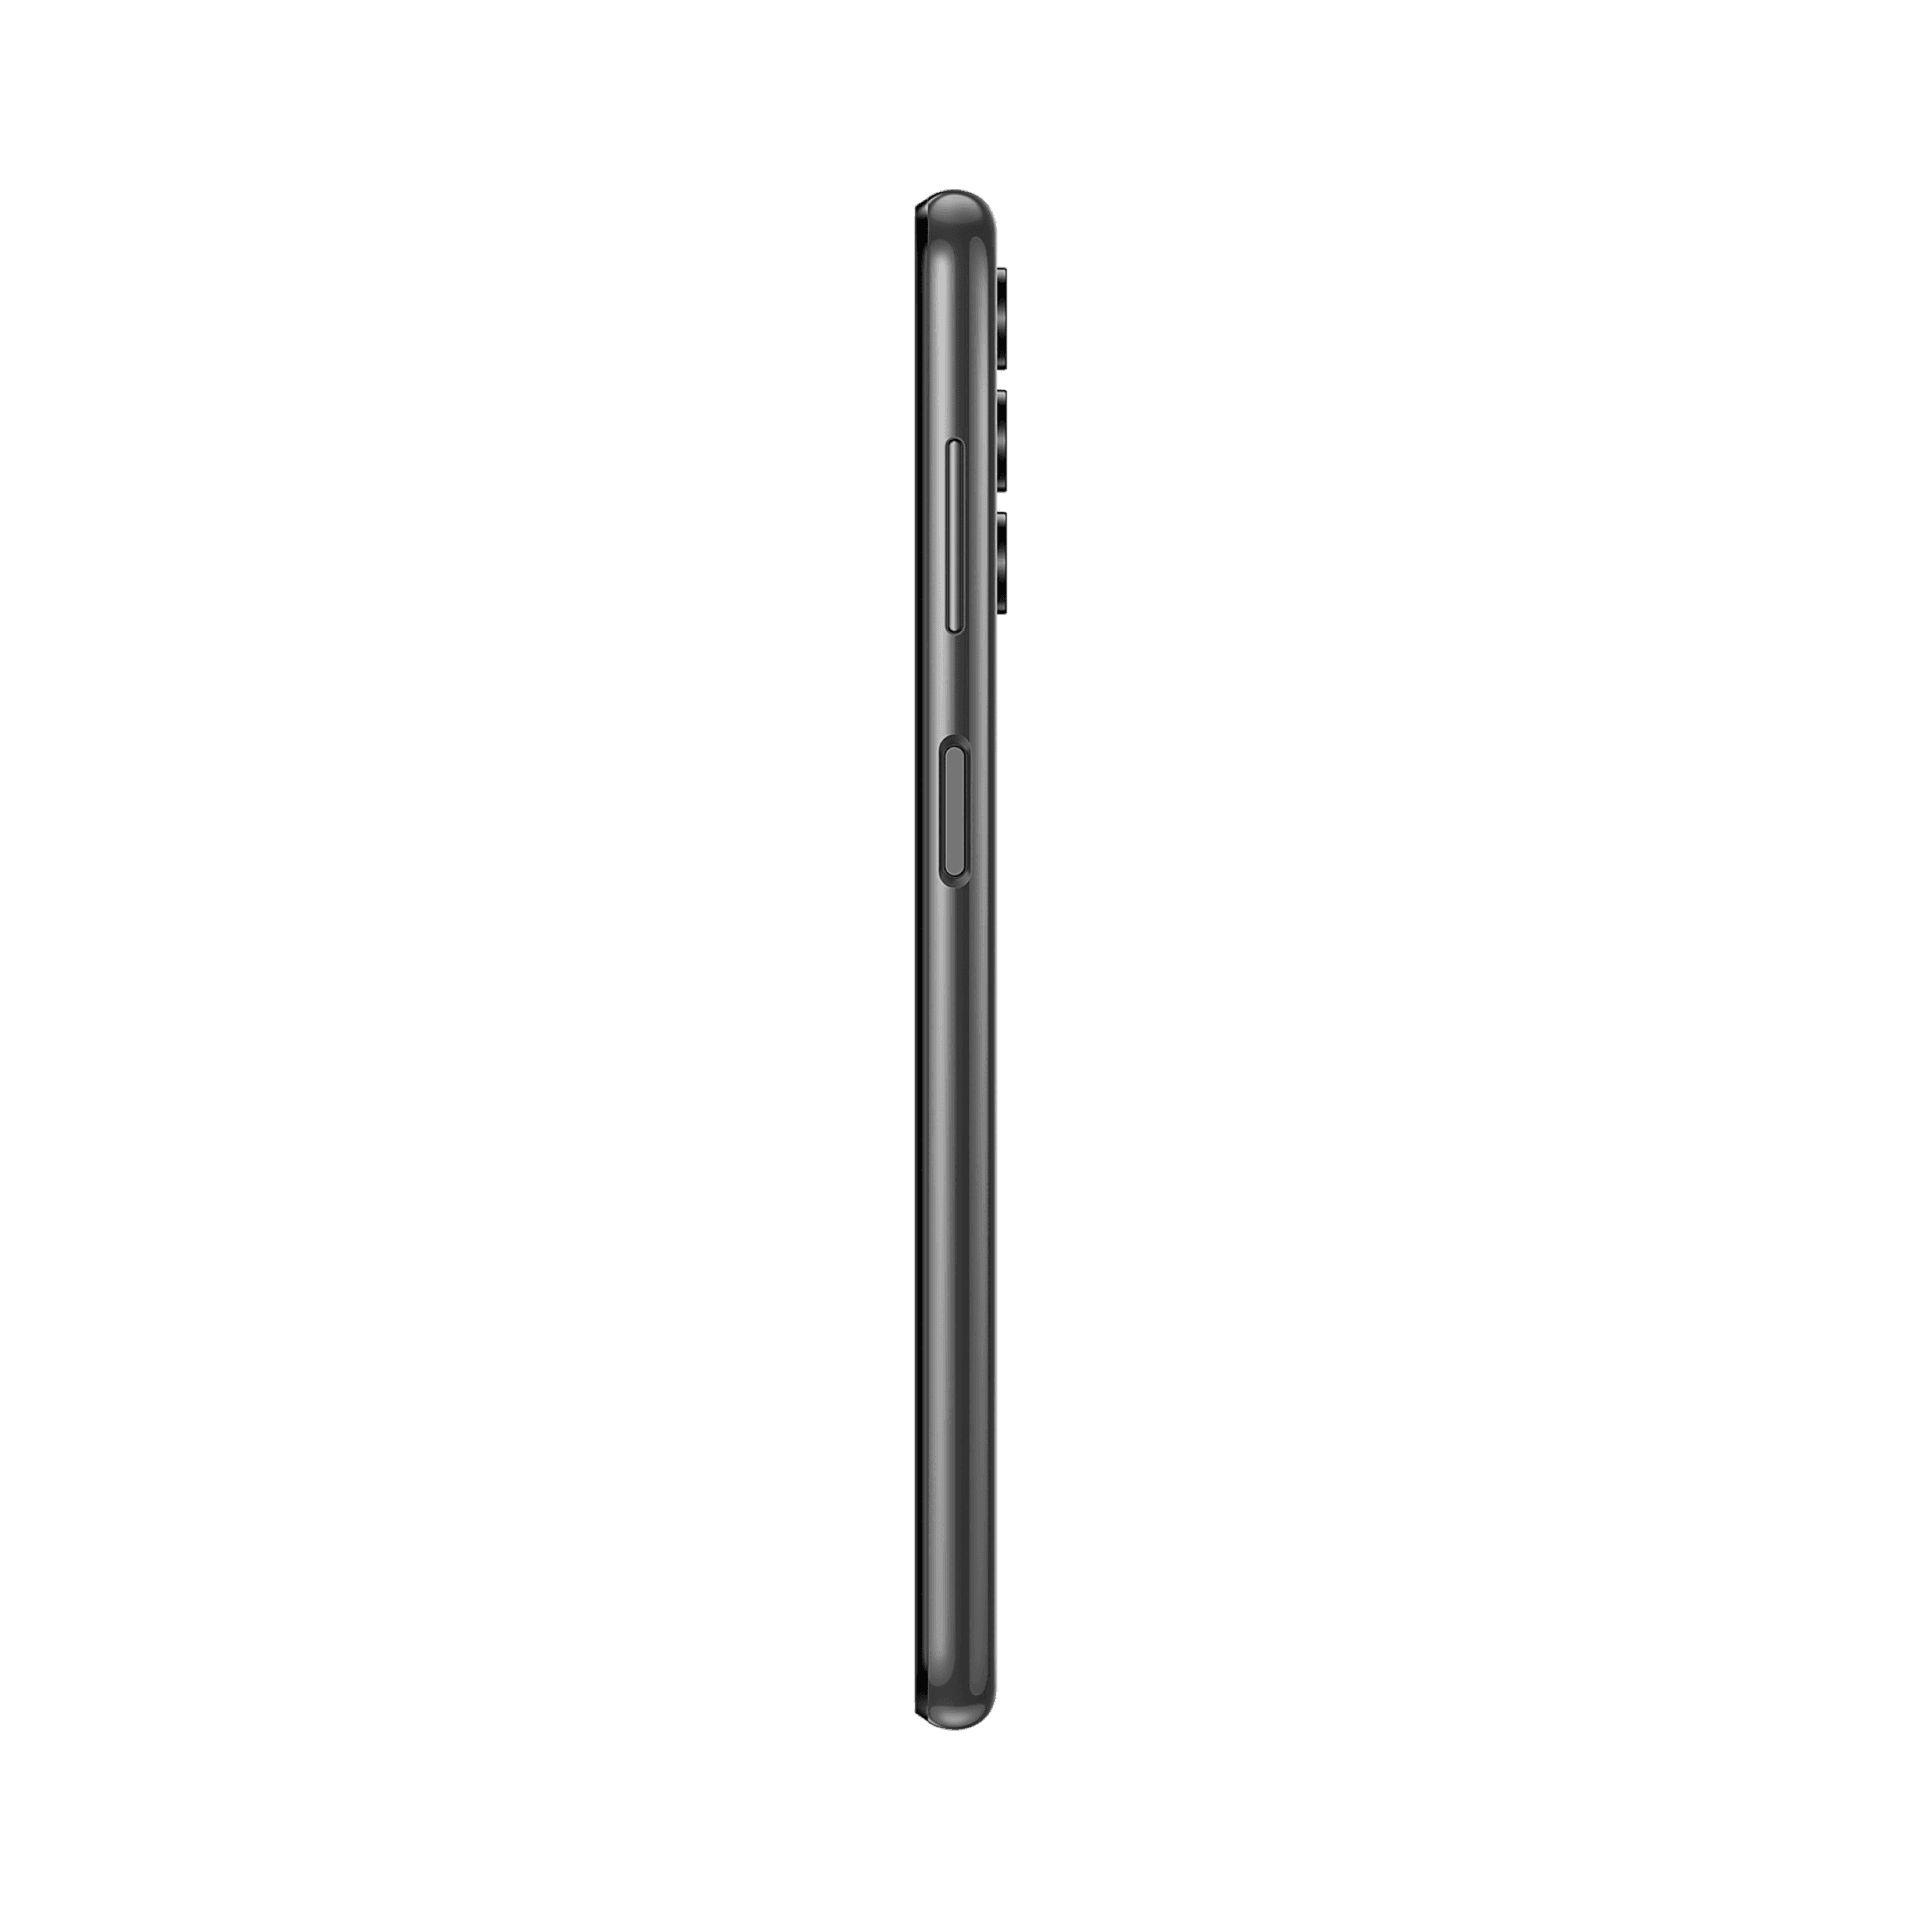 Samsung Galaxy A13 - 64 GB - Siyah